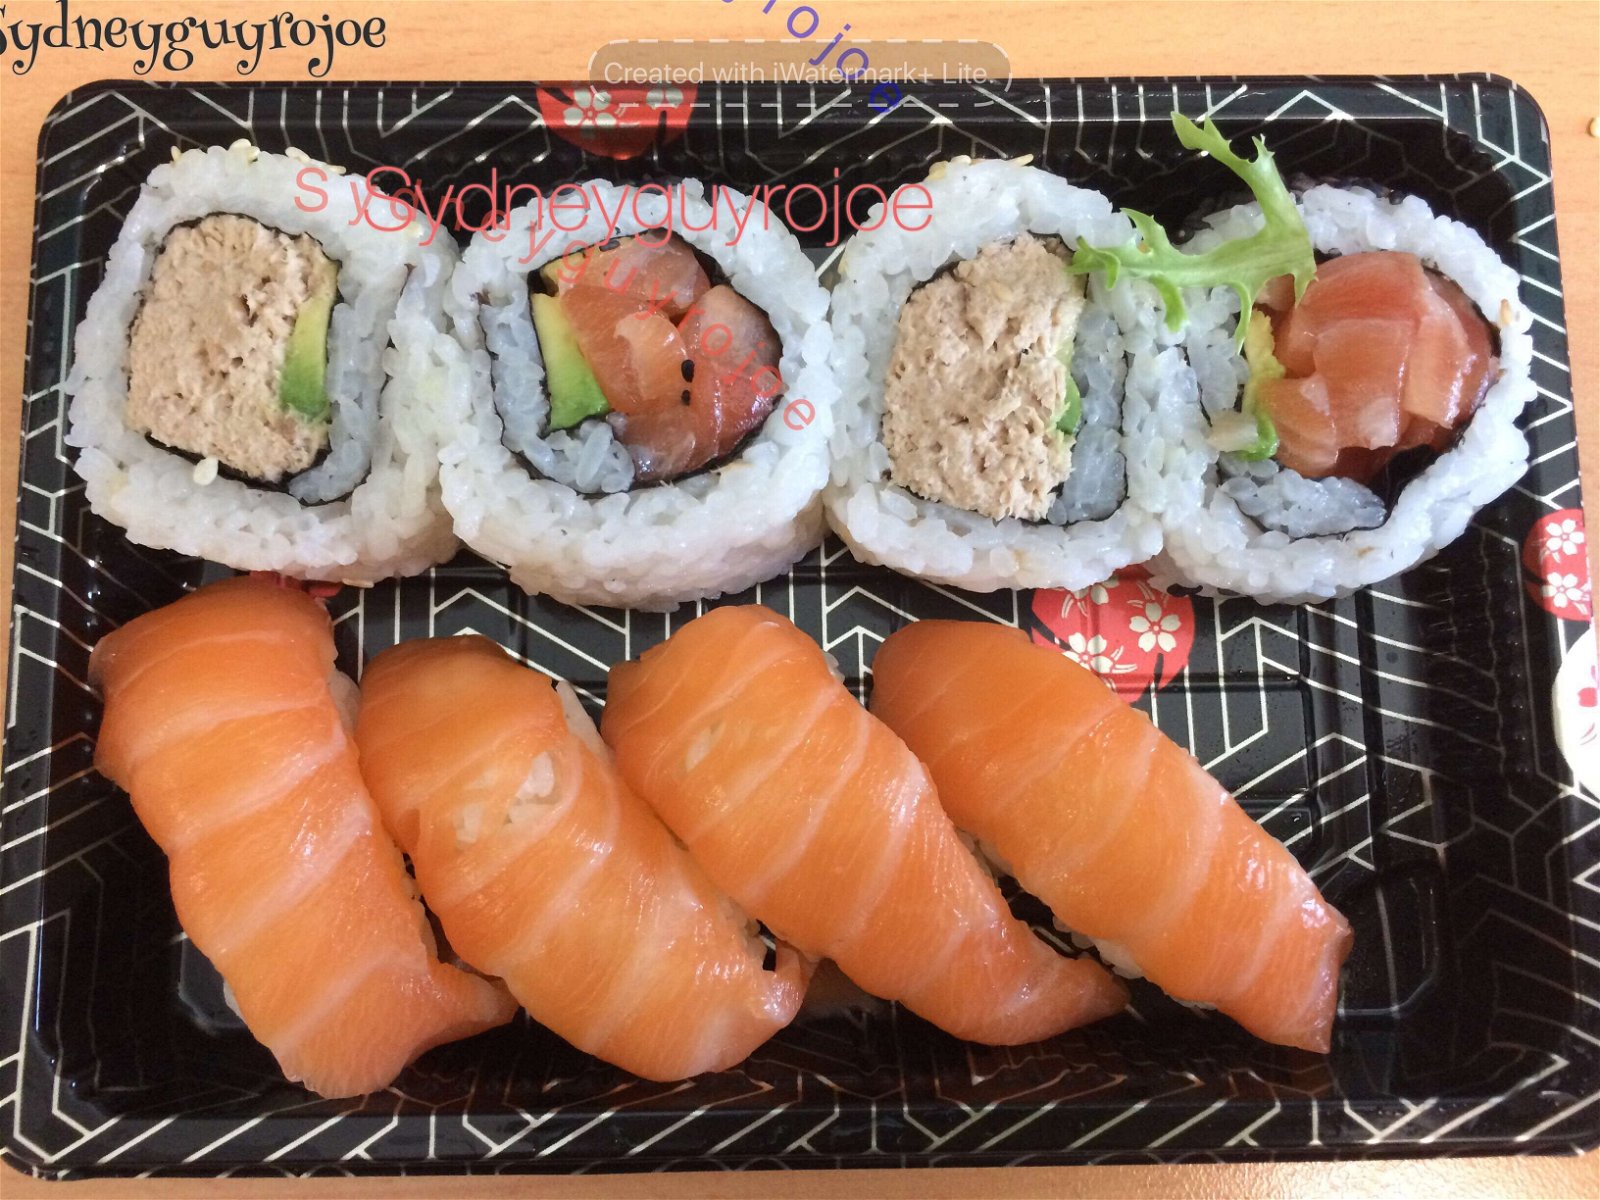 Sushi OK - Colebee